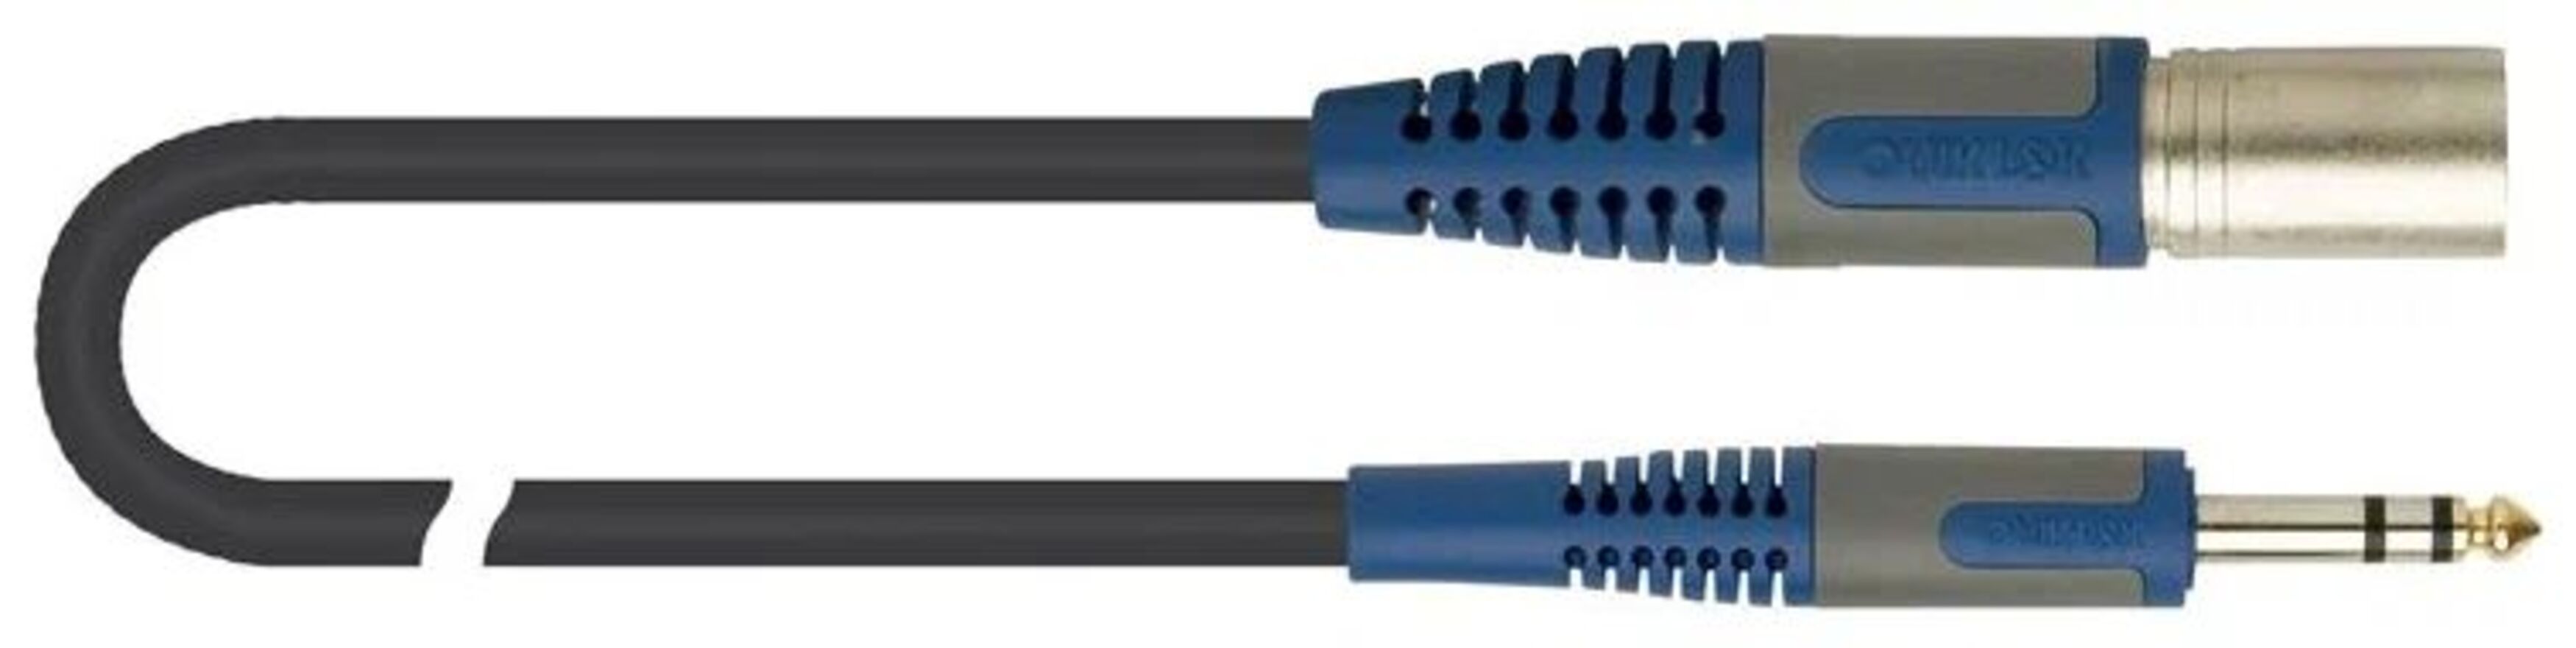 Микрофонный кабель Quik Lok RKSM344-2 с разъемами XLR папа - Stereo Jack, 2 м